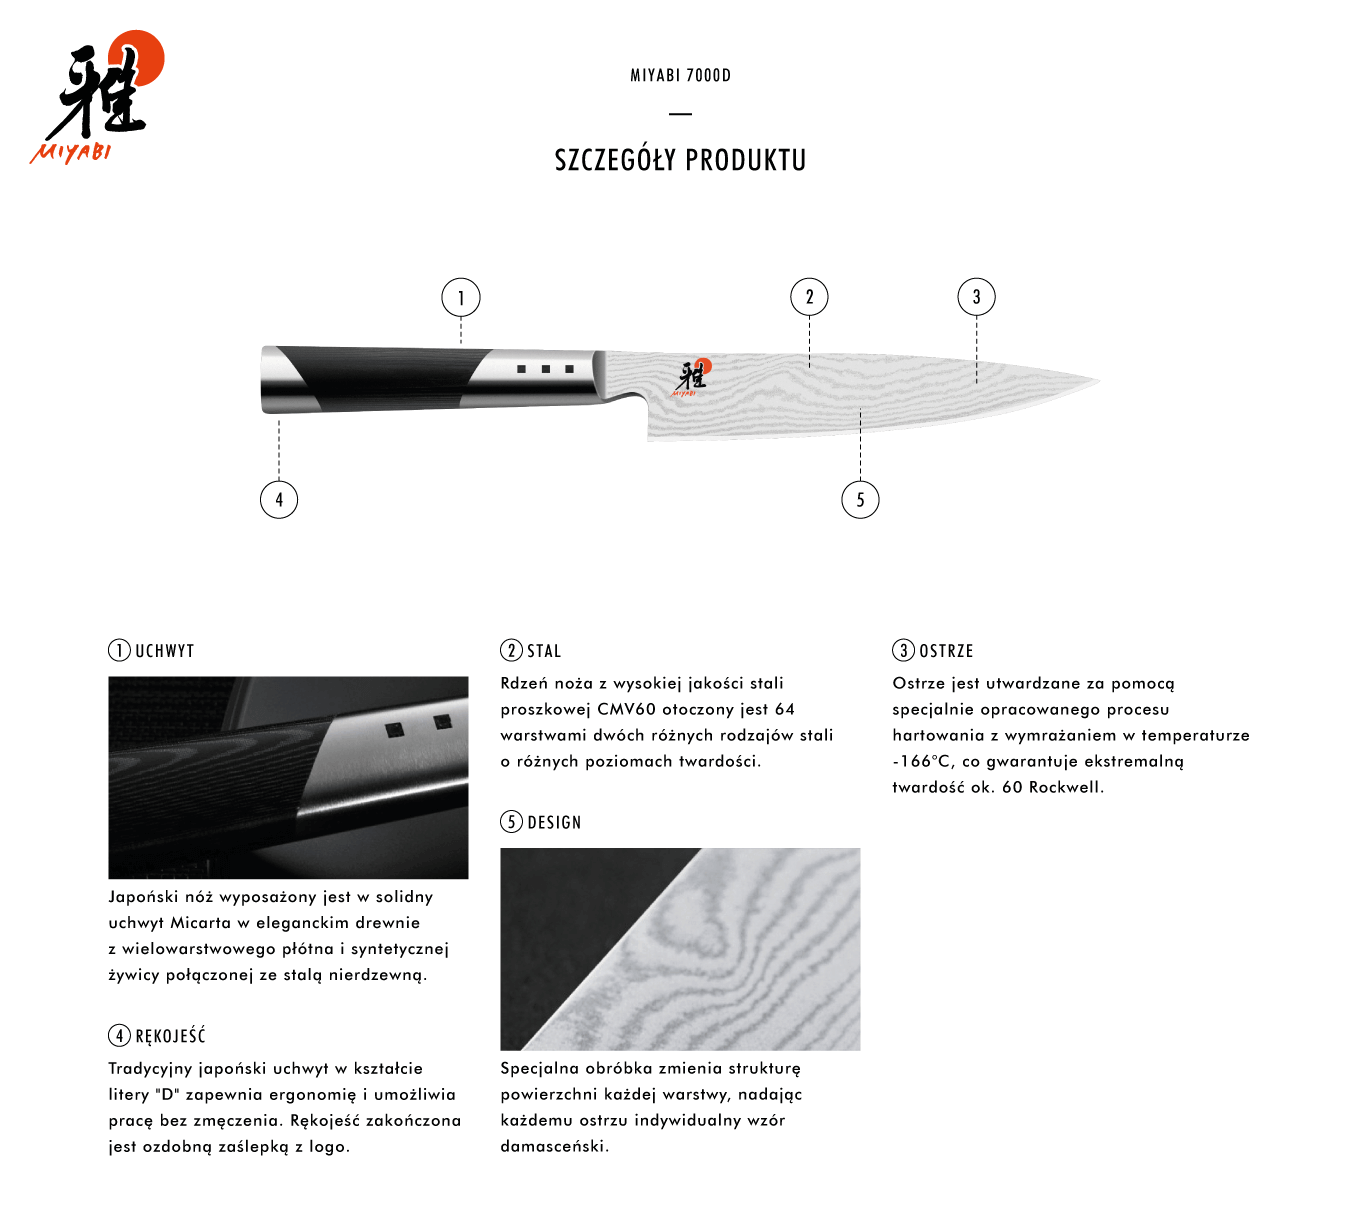 Dlaczego warto kupić nóż Shotoh Miyabi 7000D?